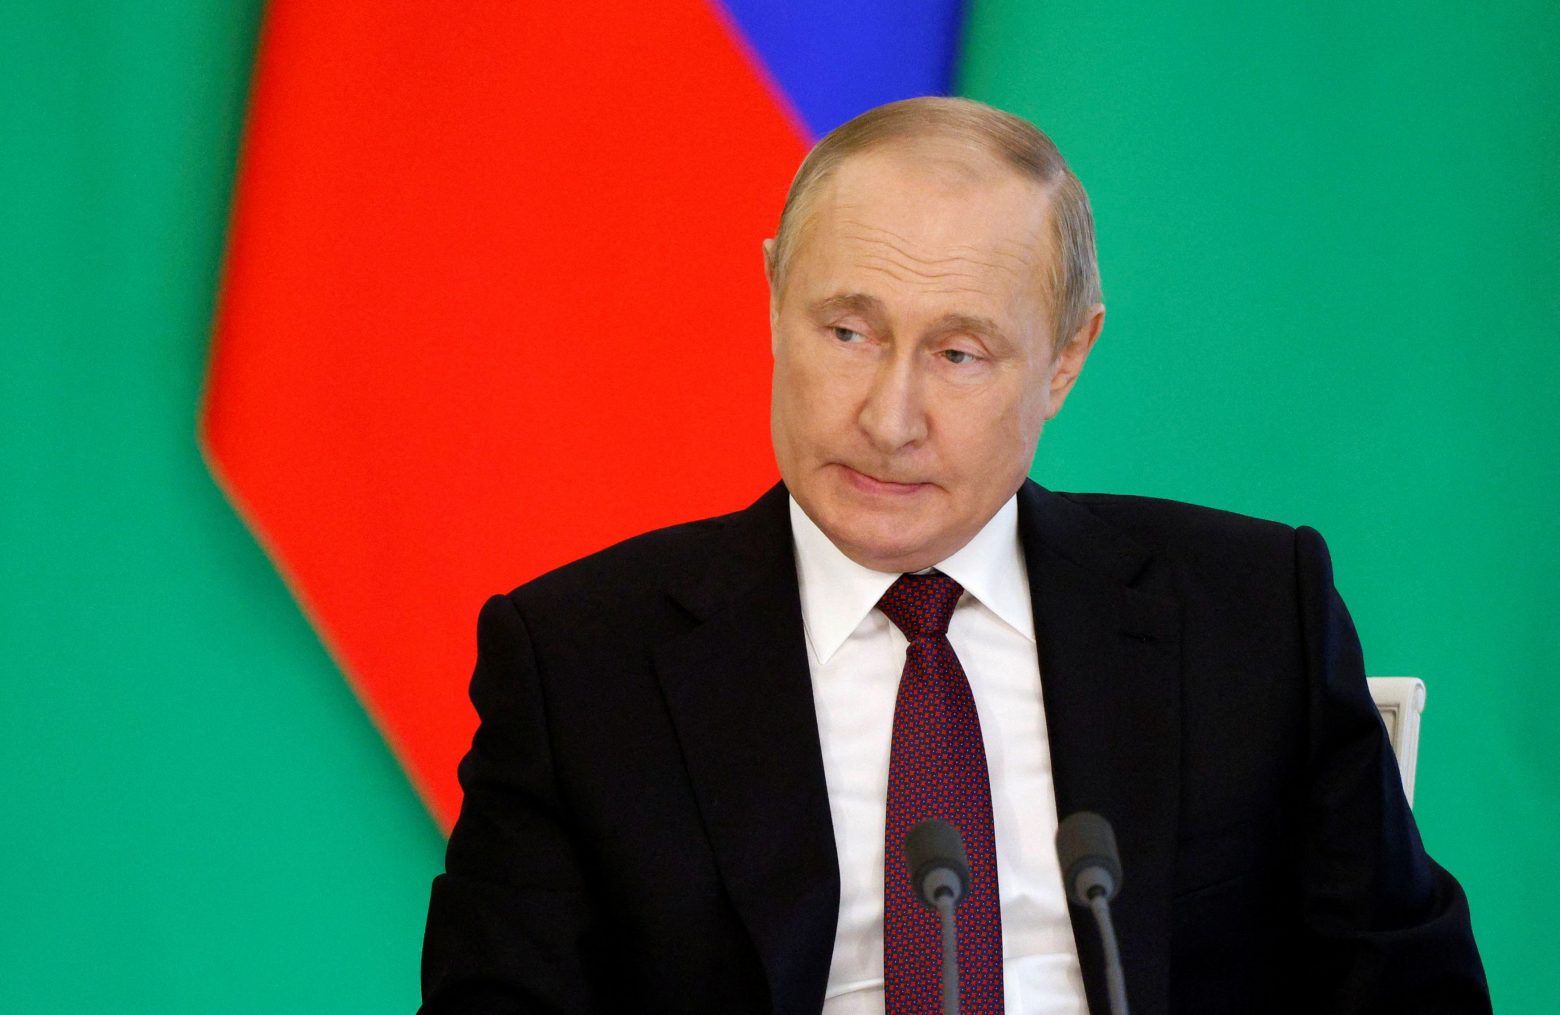 Πούτιν: Σπουδαίος μεταρρυθμιστής, ατρόμητος και επίμονος ο Μέγας Πέτρος